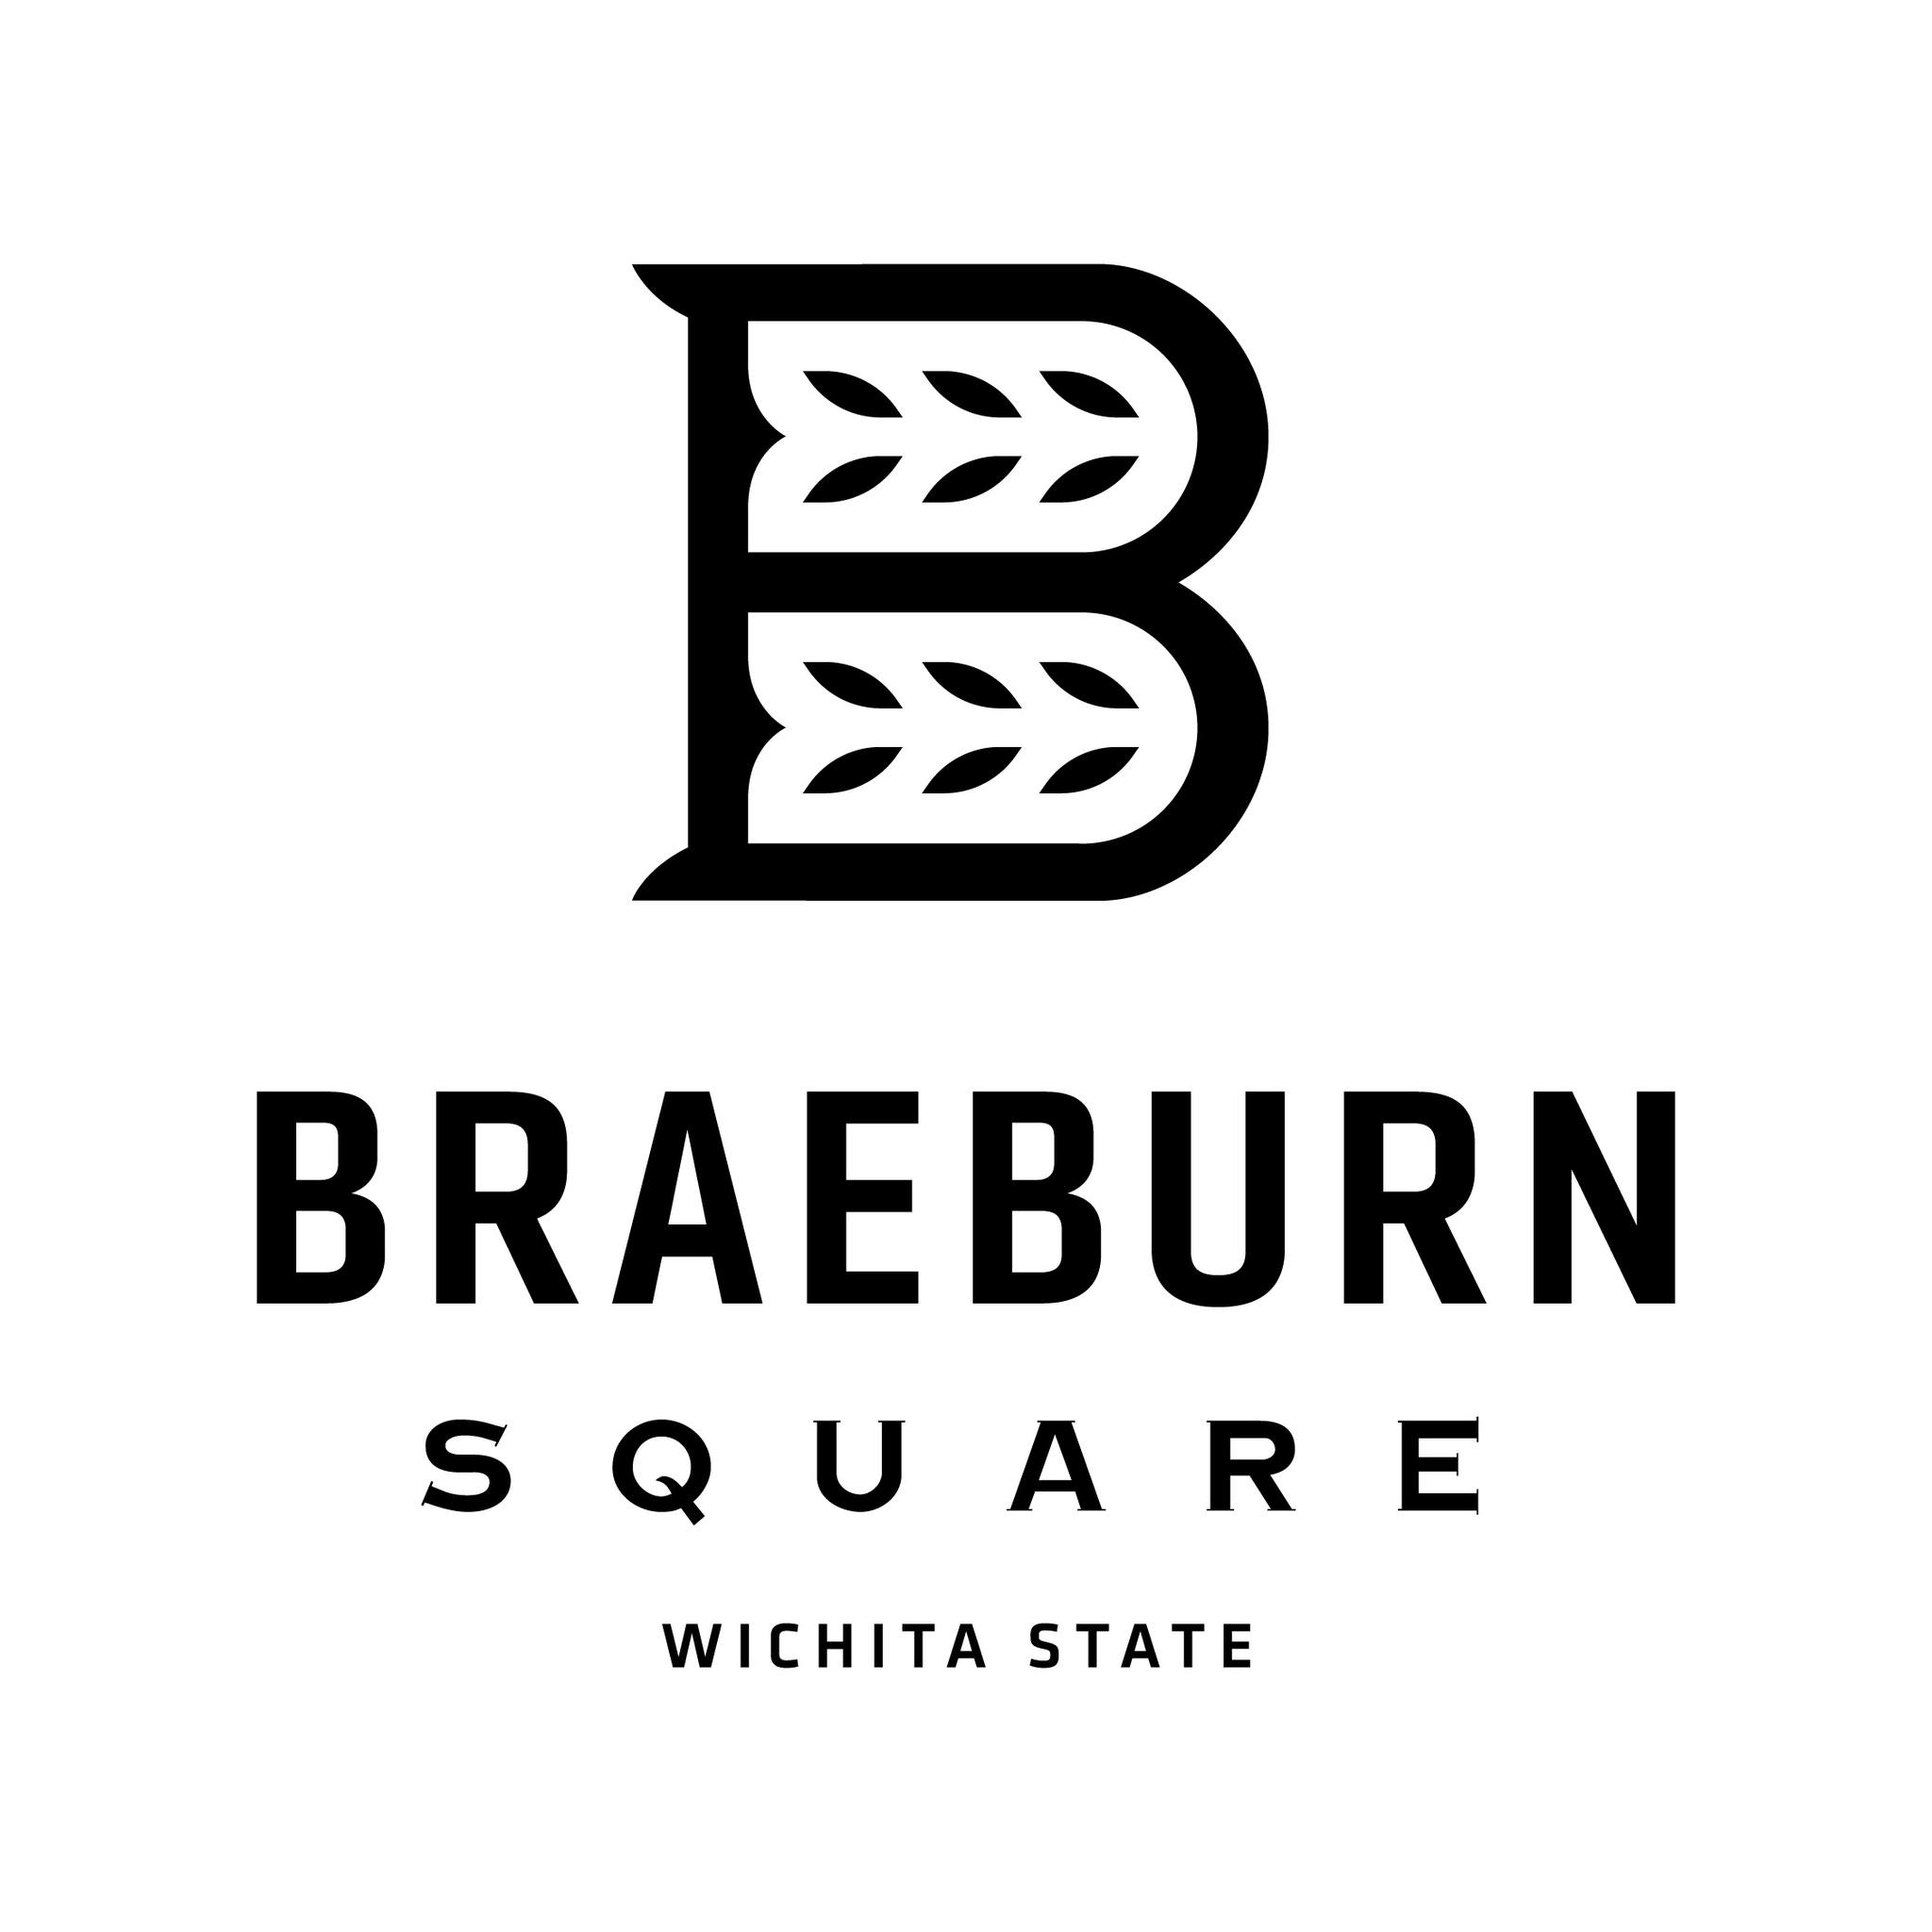 Braeburn Square logo